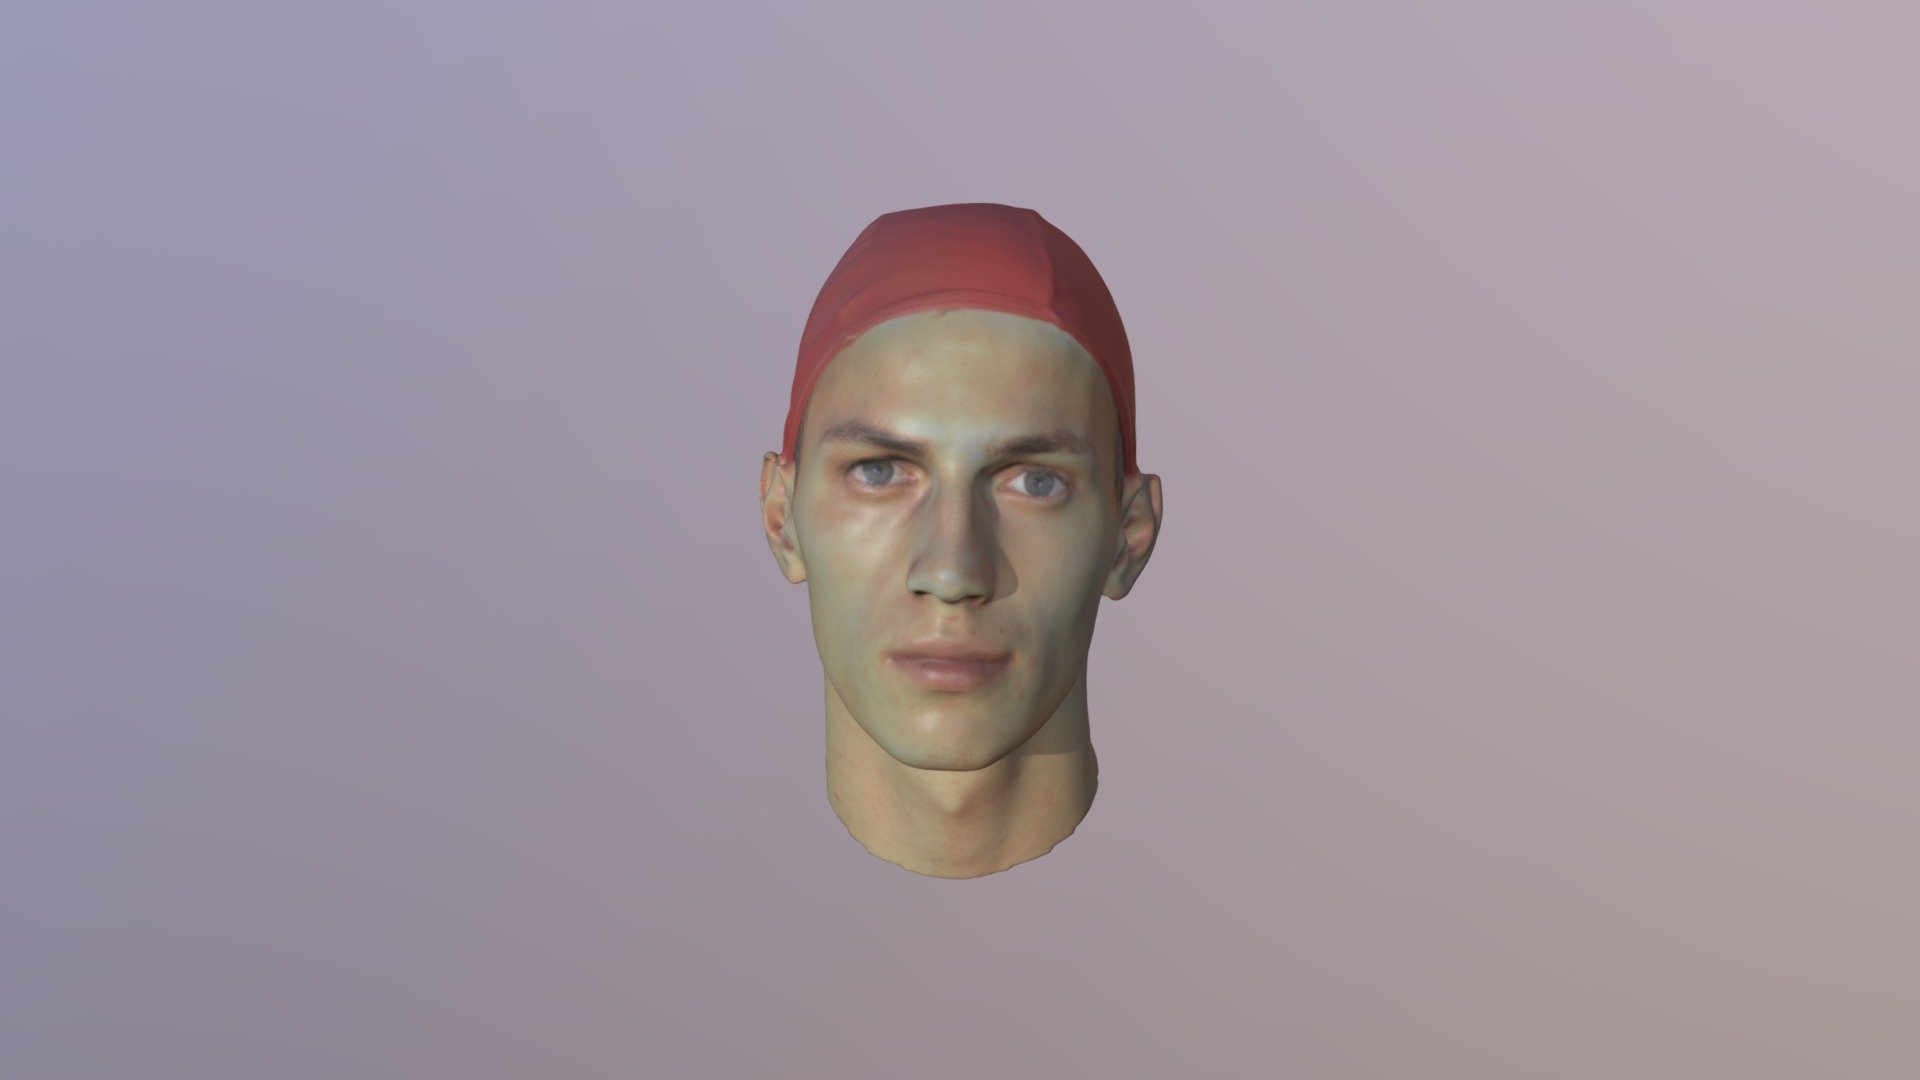 Download More 3D Scans on www.3d.sk - Alfonso 3D Scan Of Head - 3D model by 3DSKScans 3d model